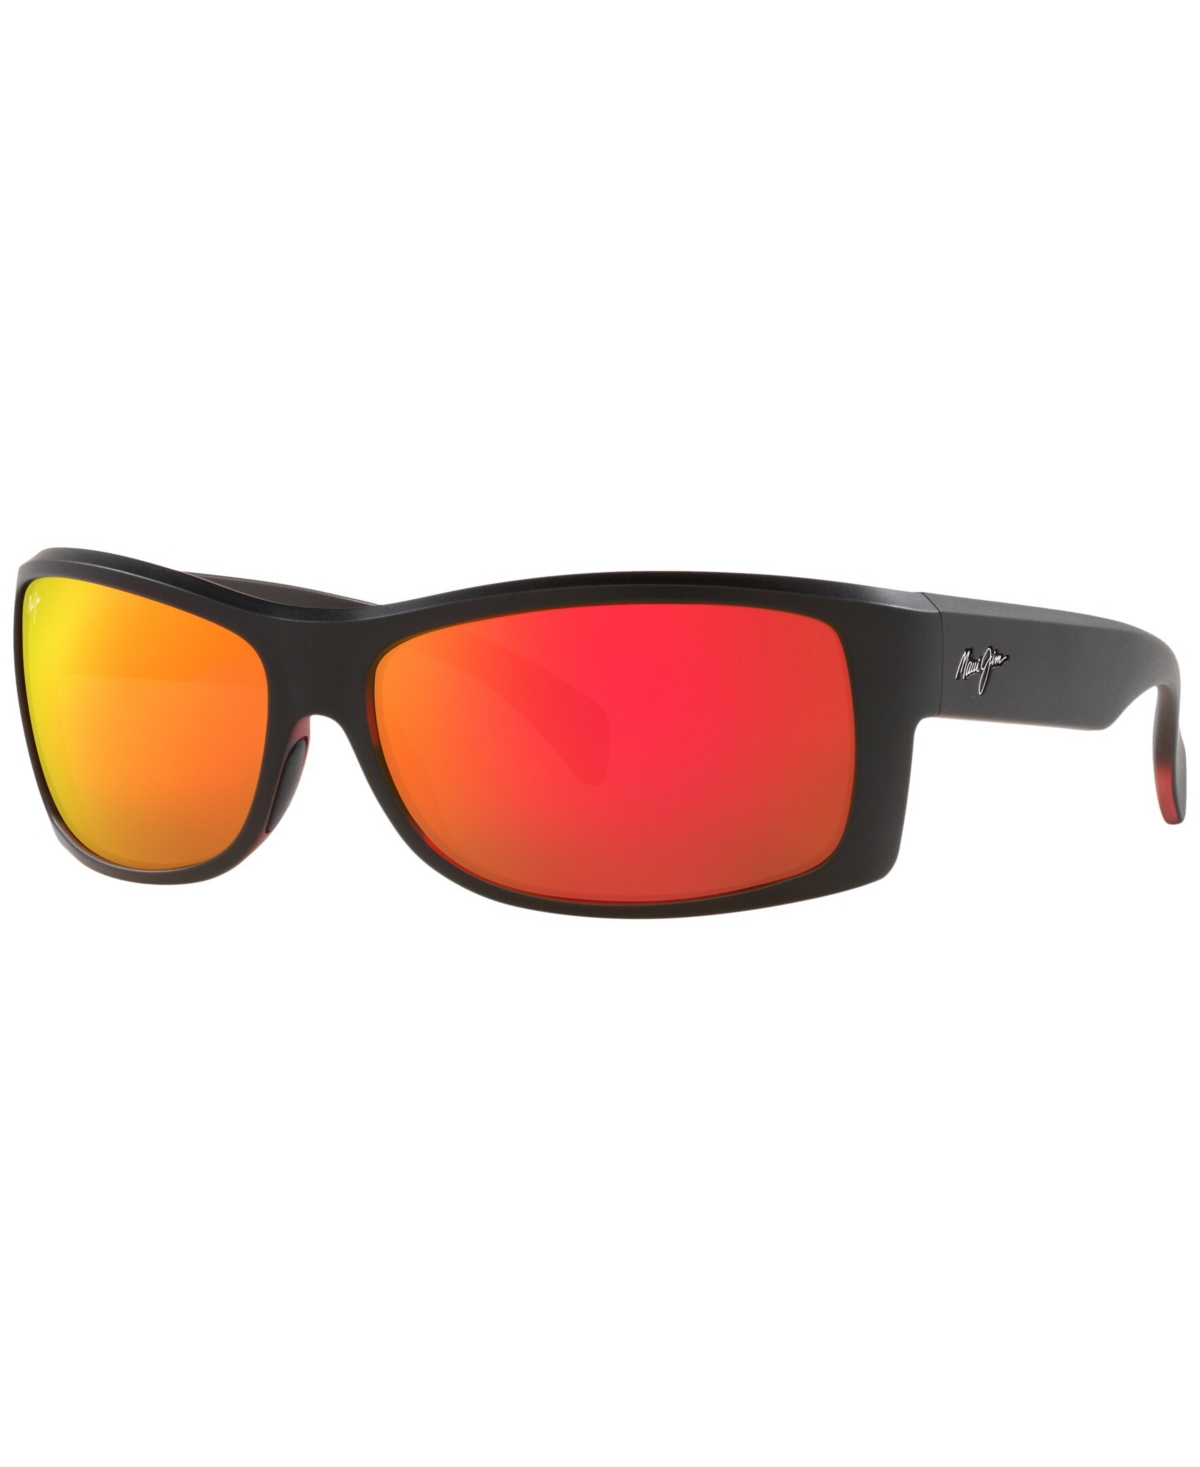 Unisex Polarized Sunglasses, Equator 65 - Black Shiny